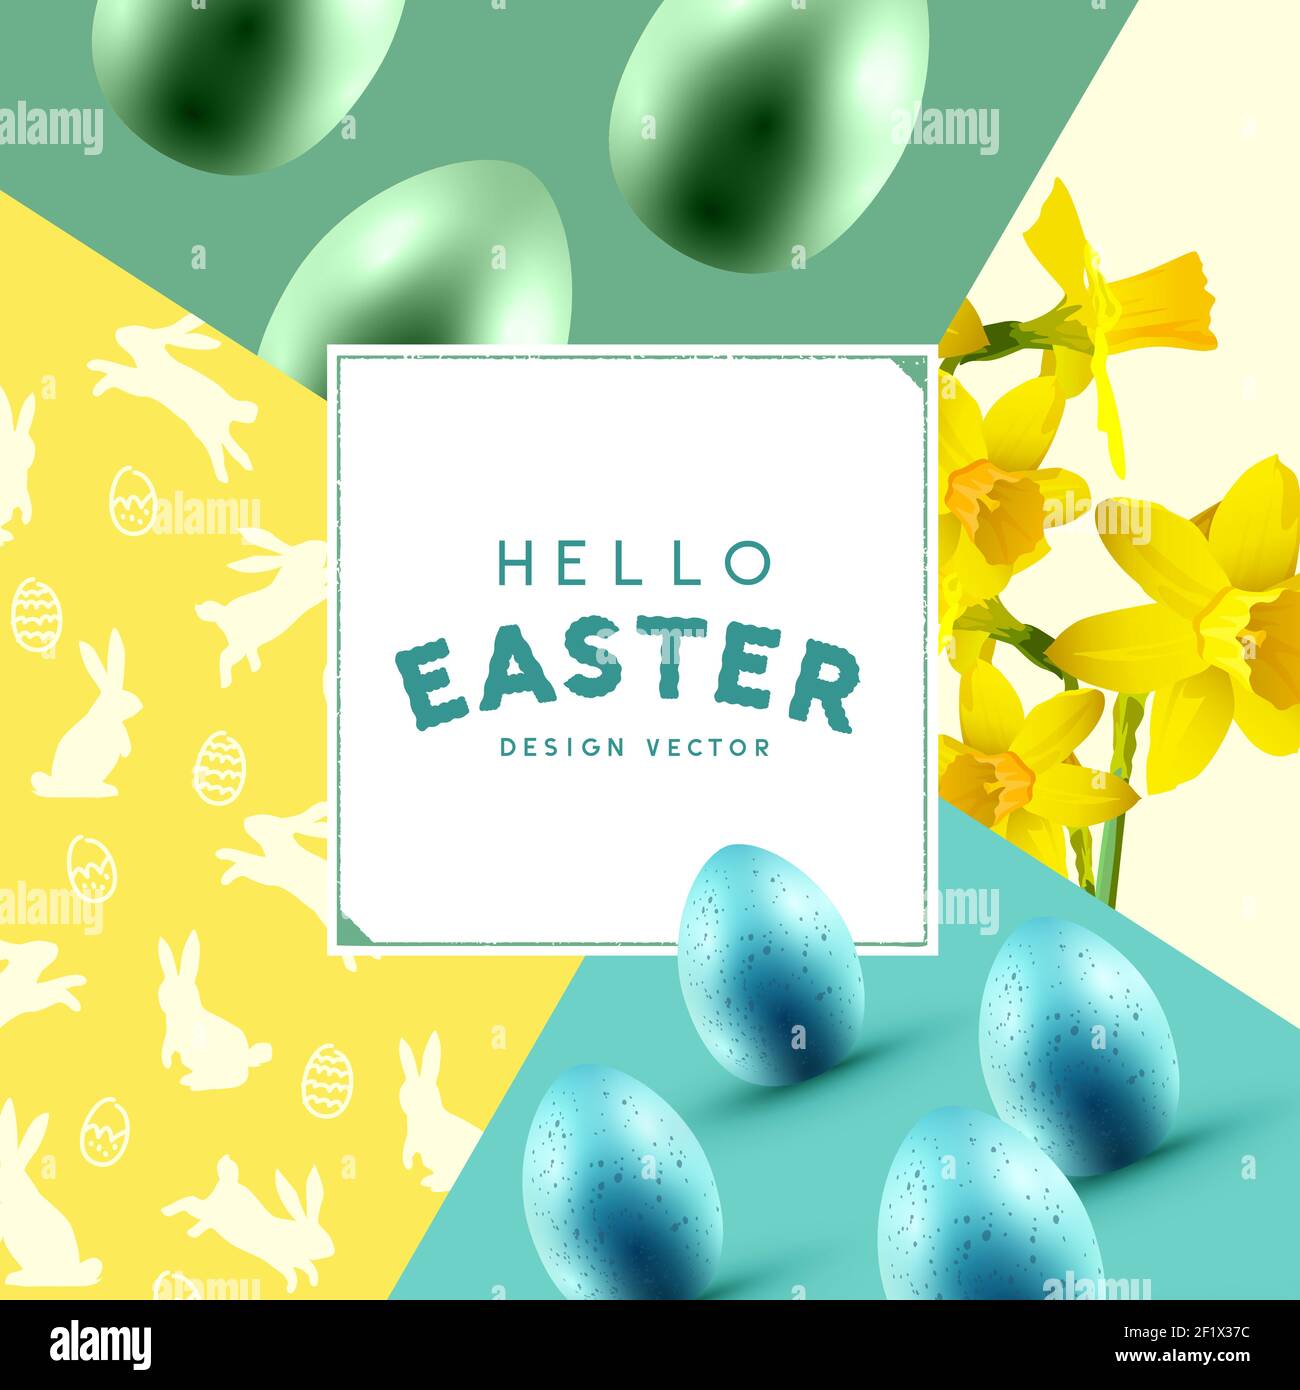 Hello Easter célébration mise en page avec des oeufs de pâques, des fleurs de jonquilles et des silhouettes de lapin. Illustration vectorielle Illustration de Vecteur